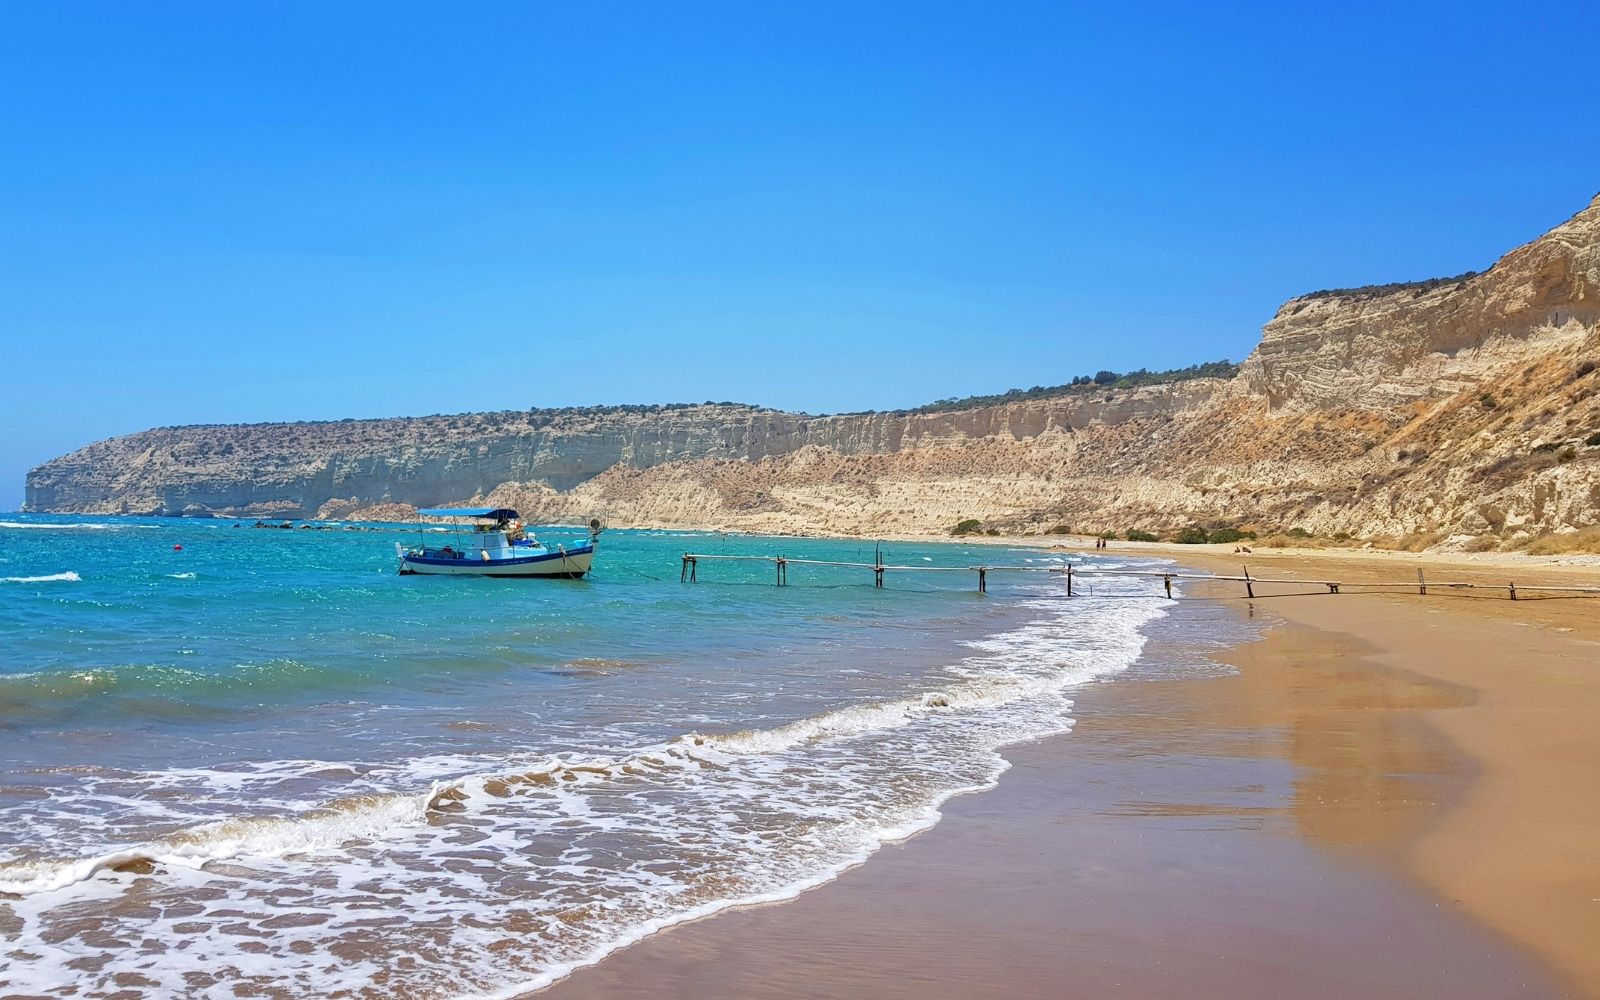 Zapalo Beach in Cyprus